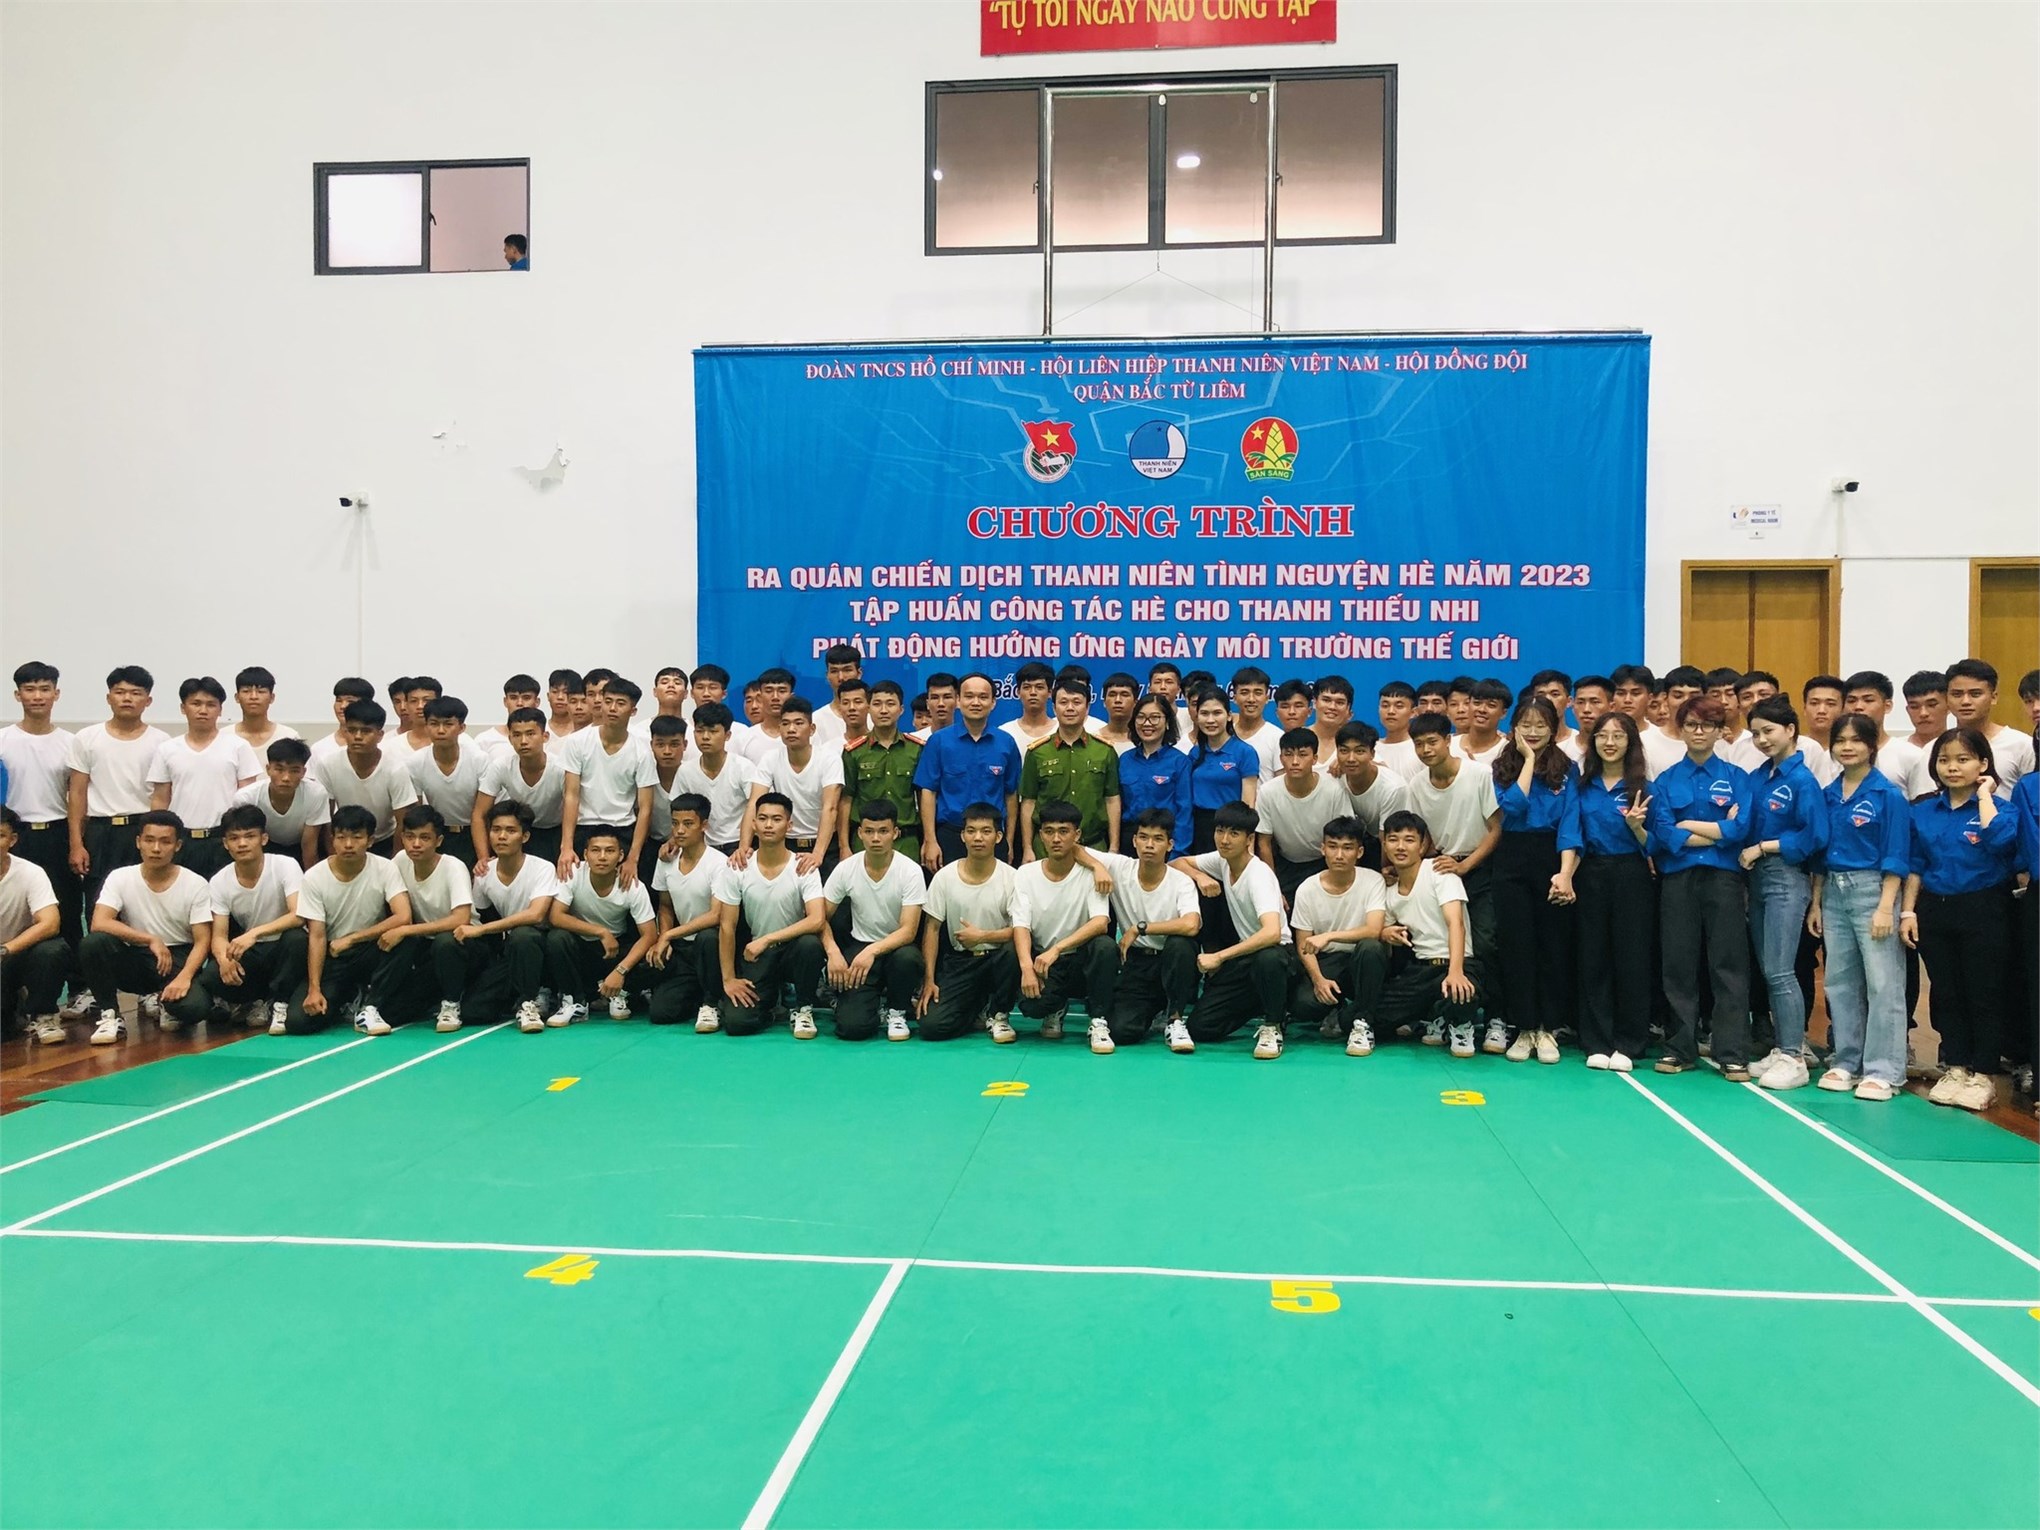 Đoàn Thanh niên trường ĐH Công nghiệp Hà Nội phối hợp với Quận đoàn Bắc Từ Liêm tổ chức chương trình ra quân chiến dịch thanh niên tình nguyện hè năm 2023